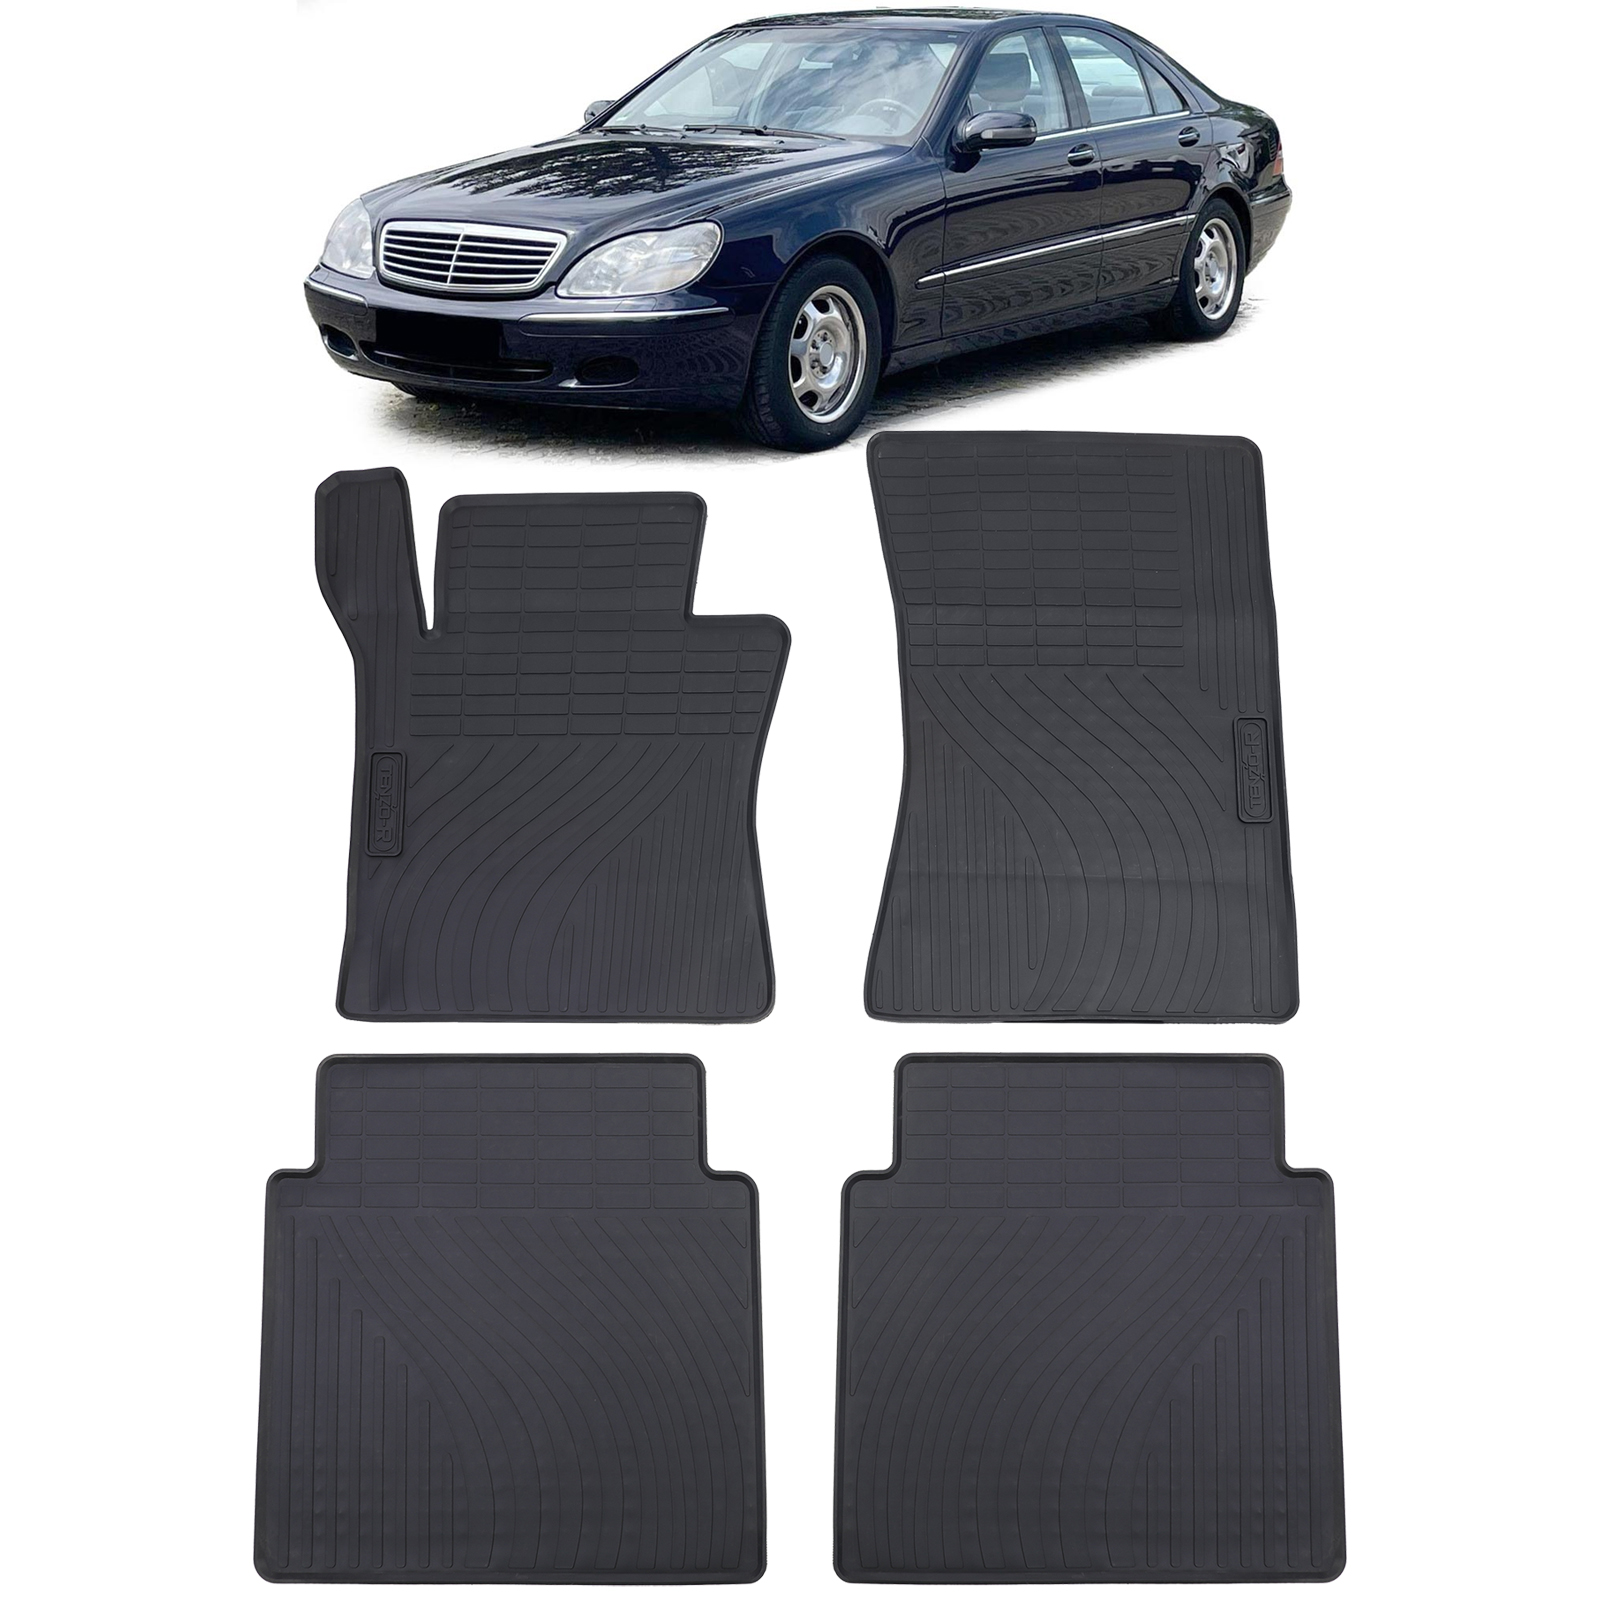 Auto Gummi Fußmatten Schwarz Premium Set für Mercedes S-Klasse W220 98-05  kaufen